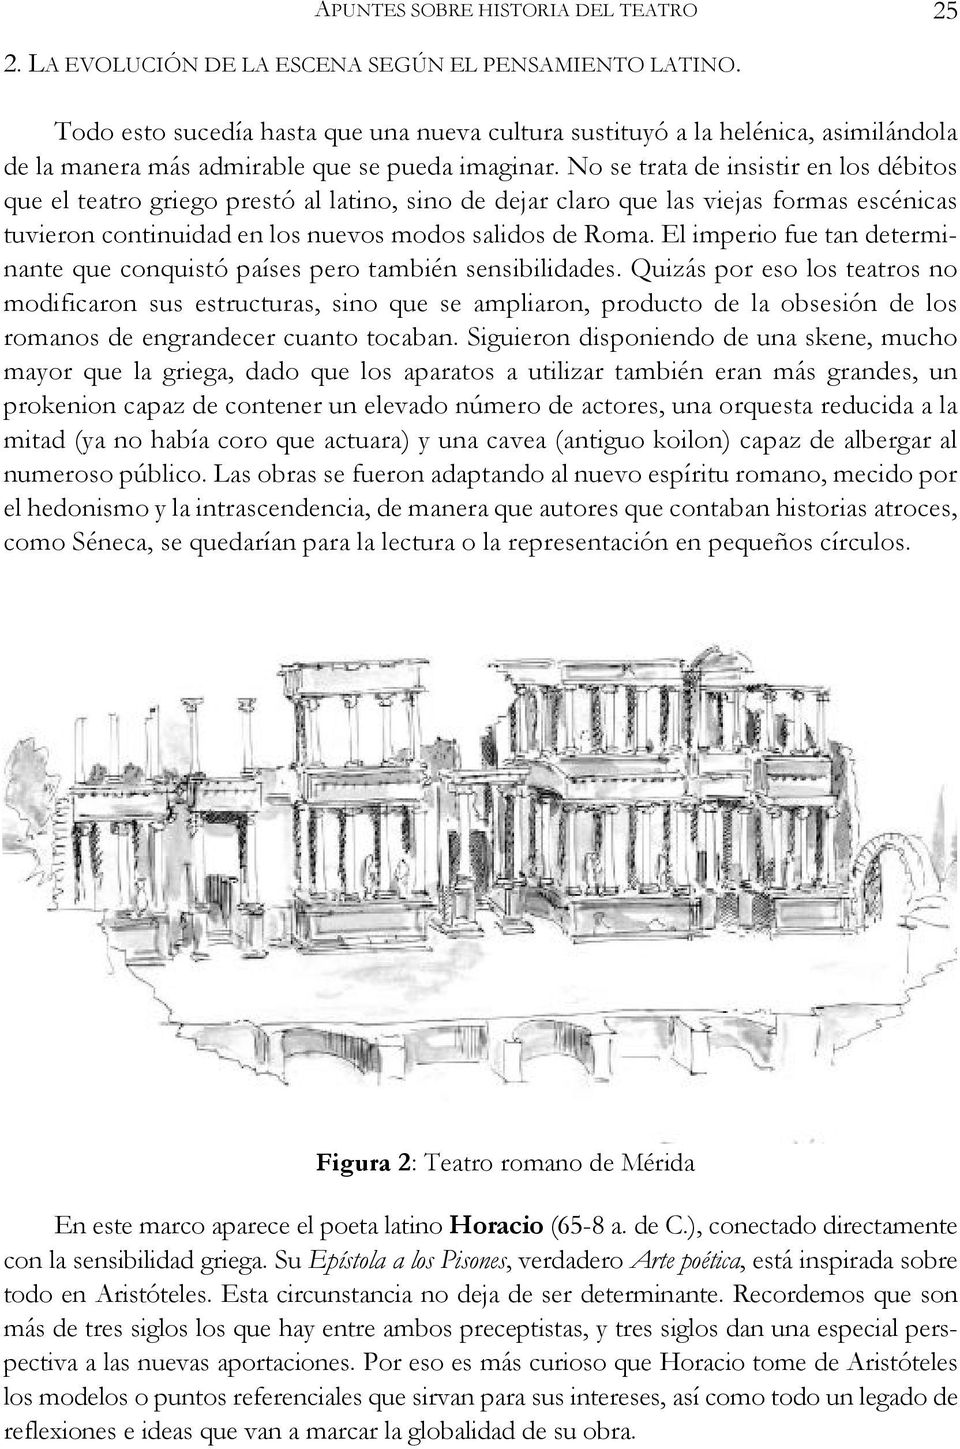 No se trata de insistir en los débitos que el teatro griego prestó al latino, sino de dejar claro que las viejas formas escénicas tuvieron continuidad en los nuevos modos salidos de Roma.